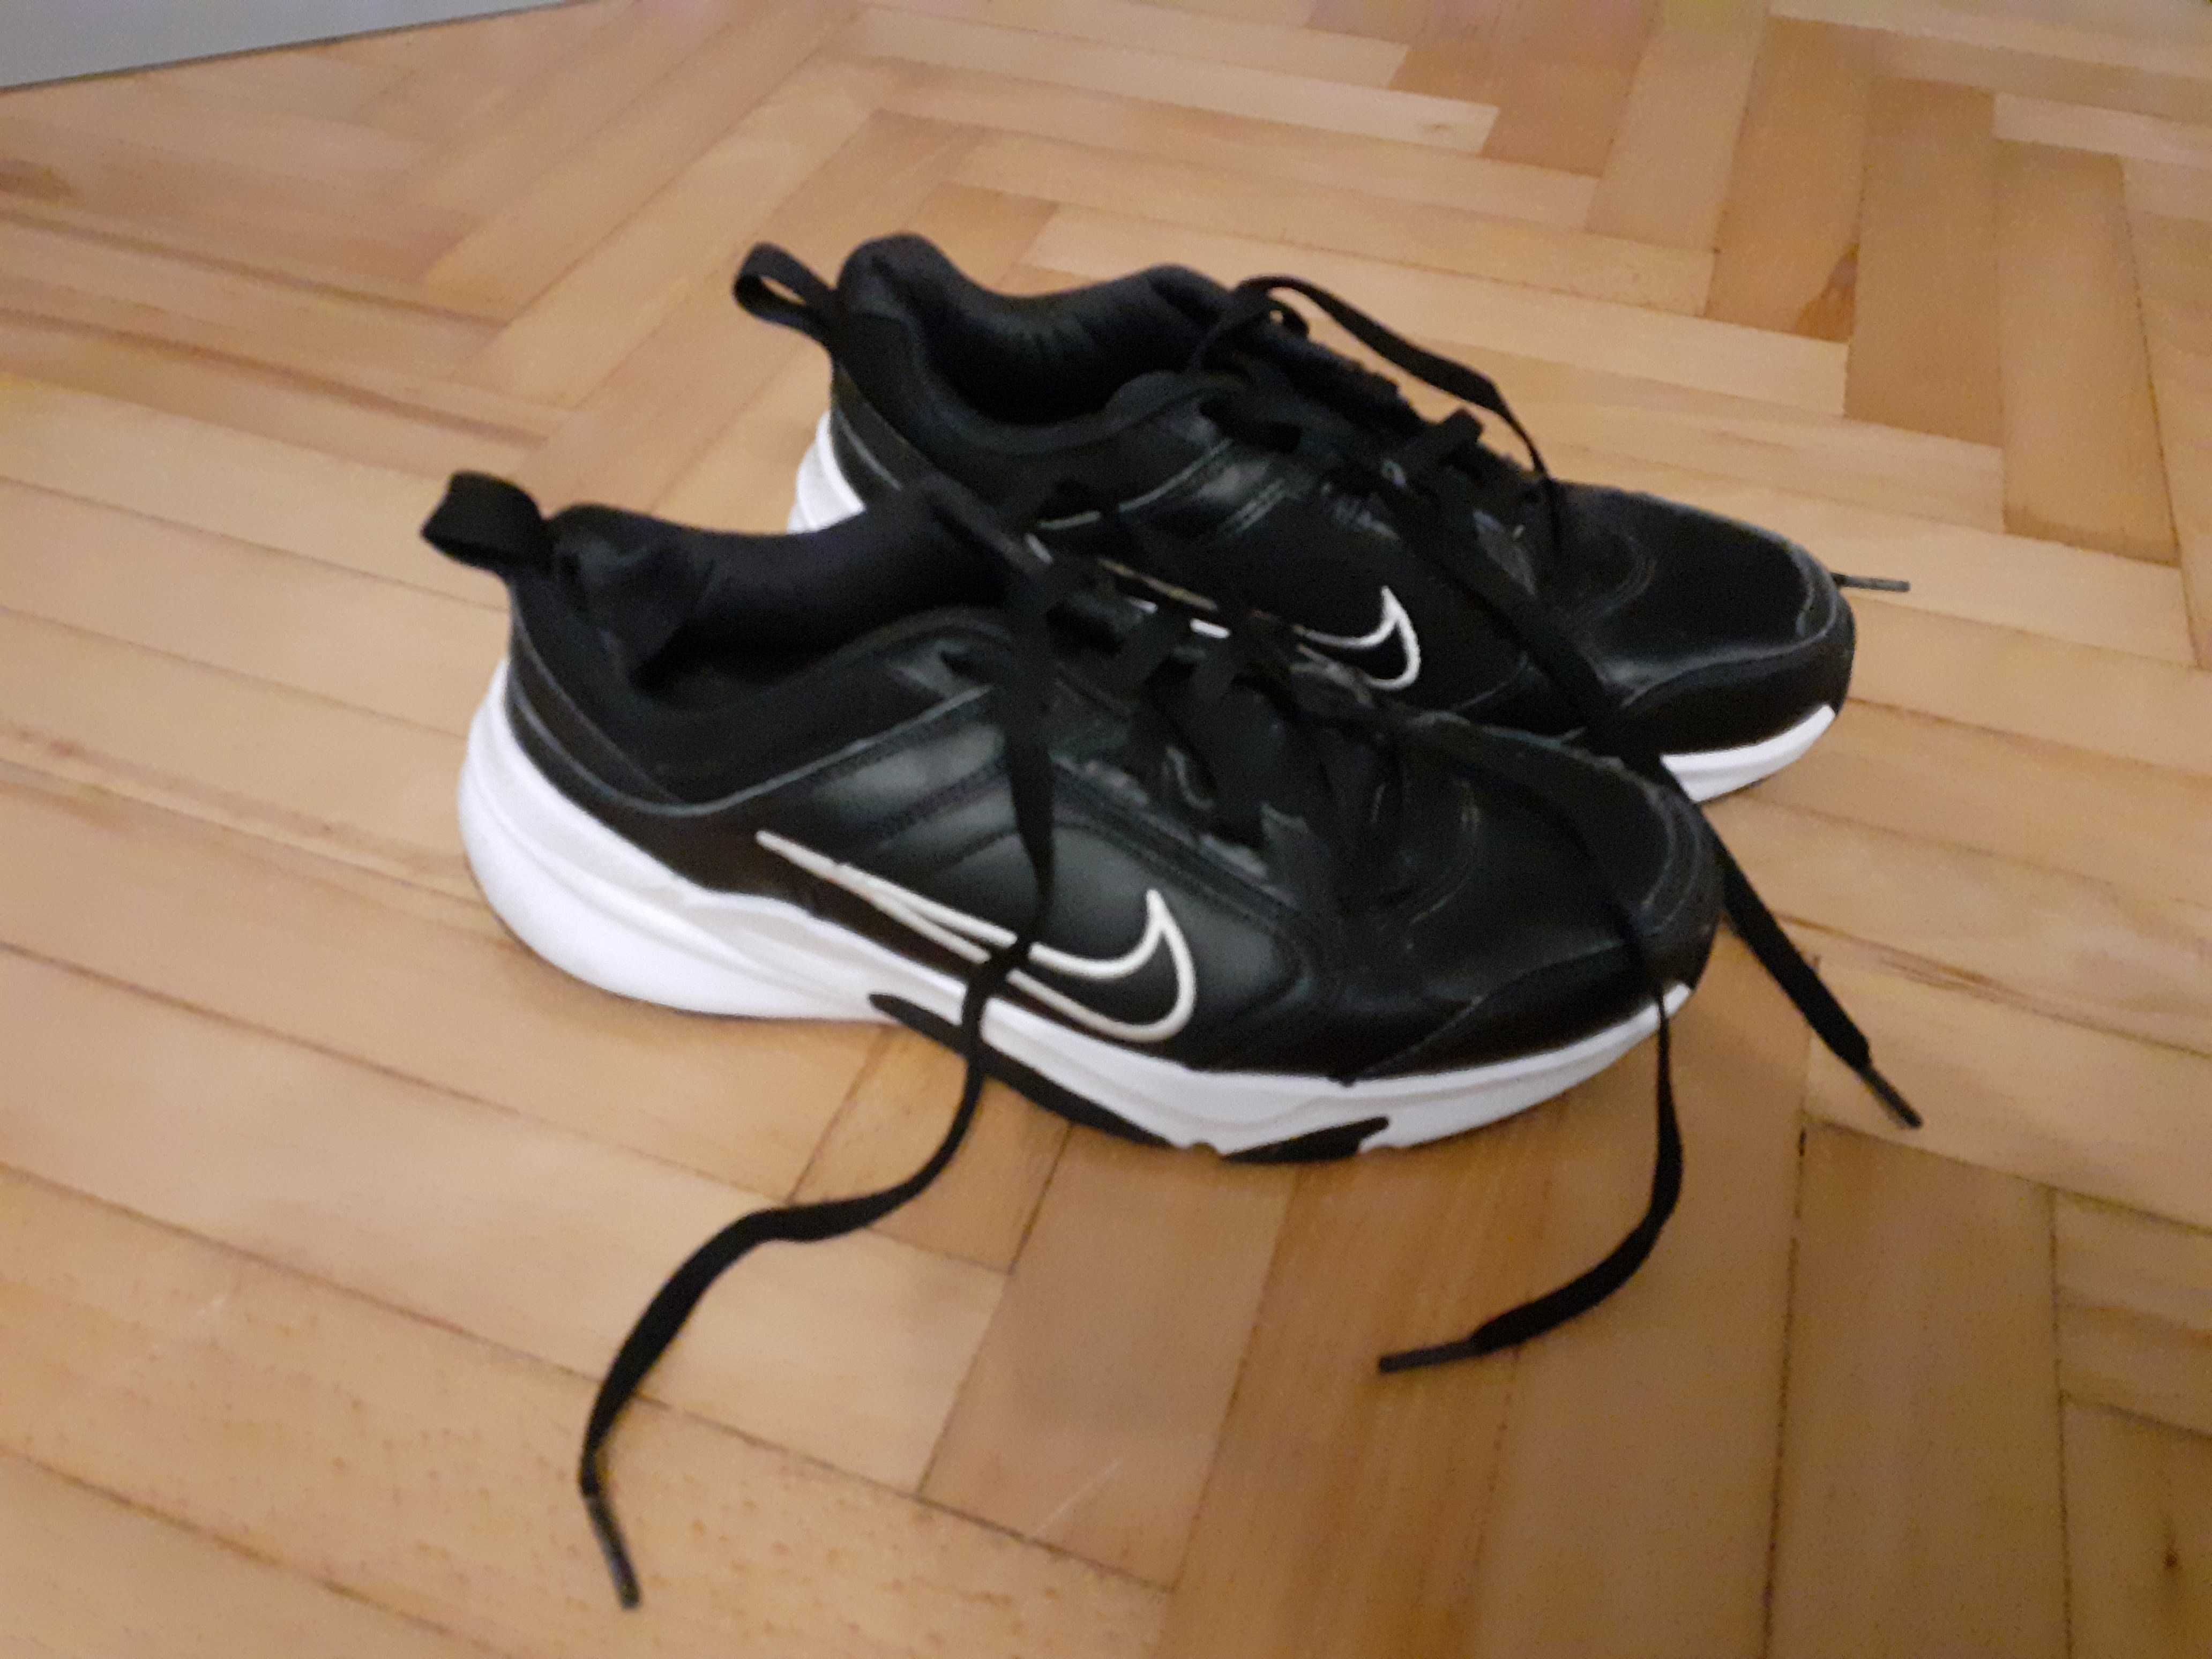 Buty sneakersy Nike Defallday rozmiar 41